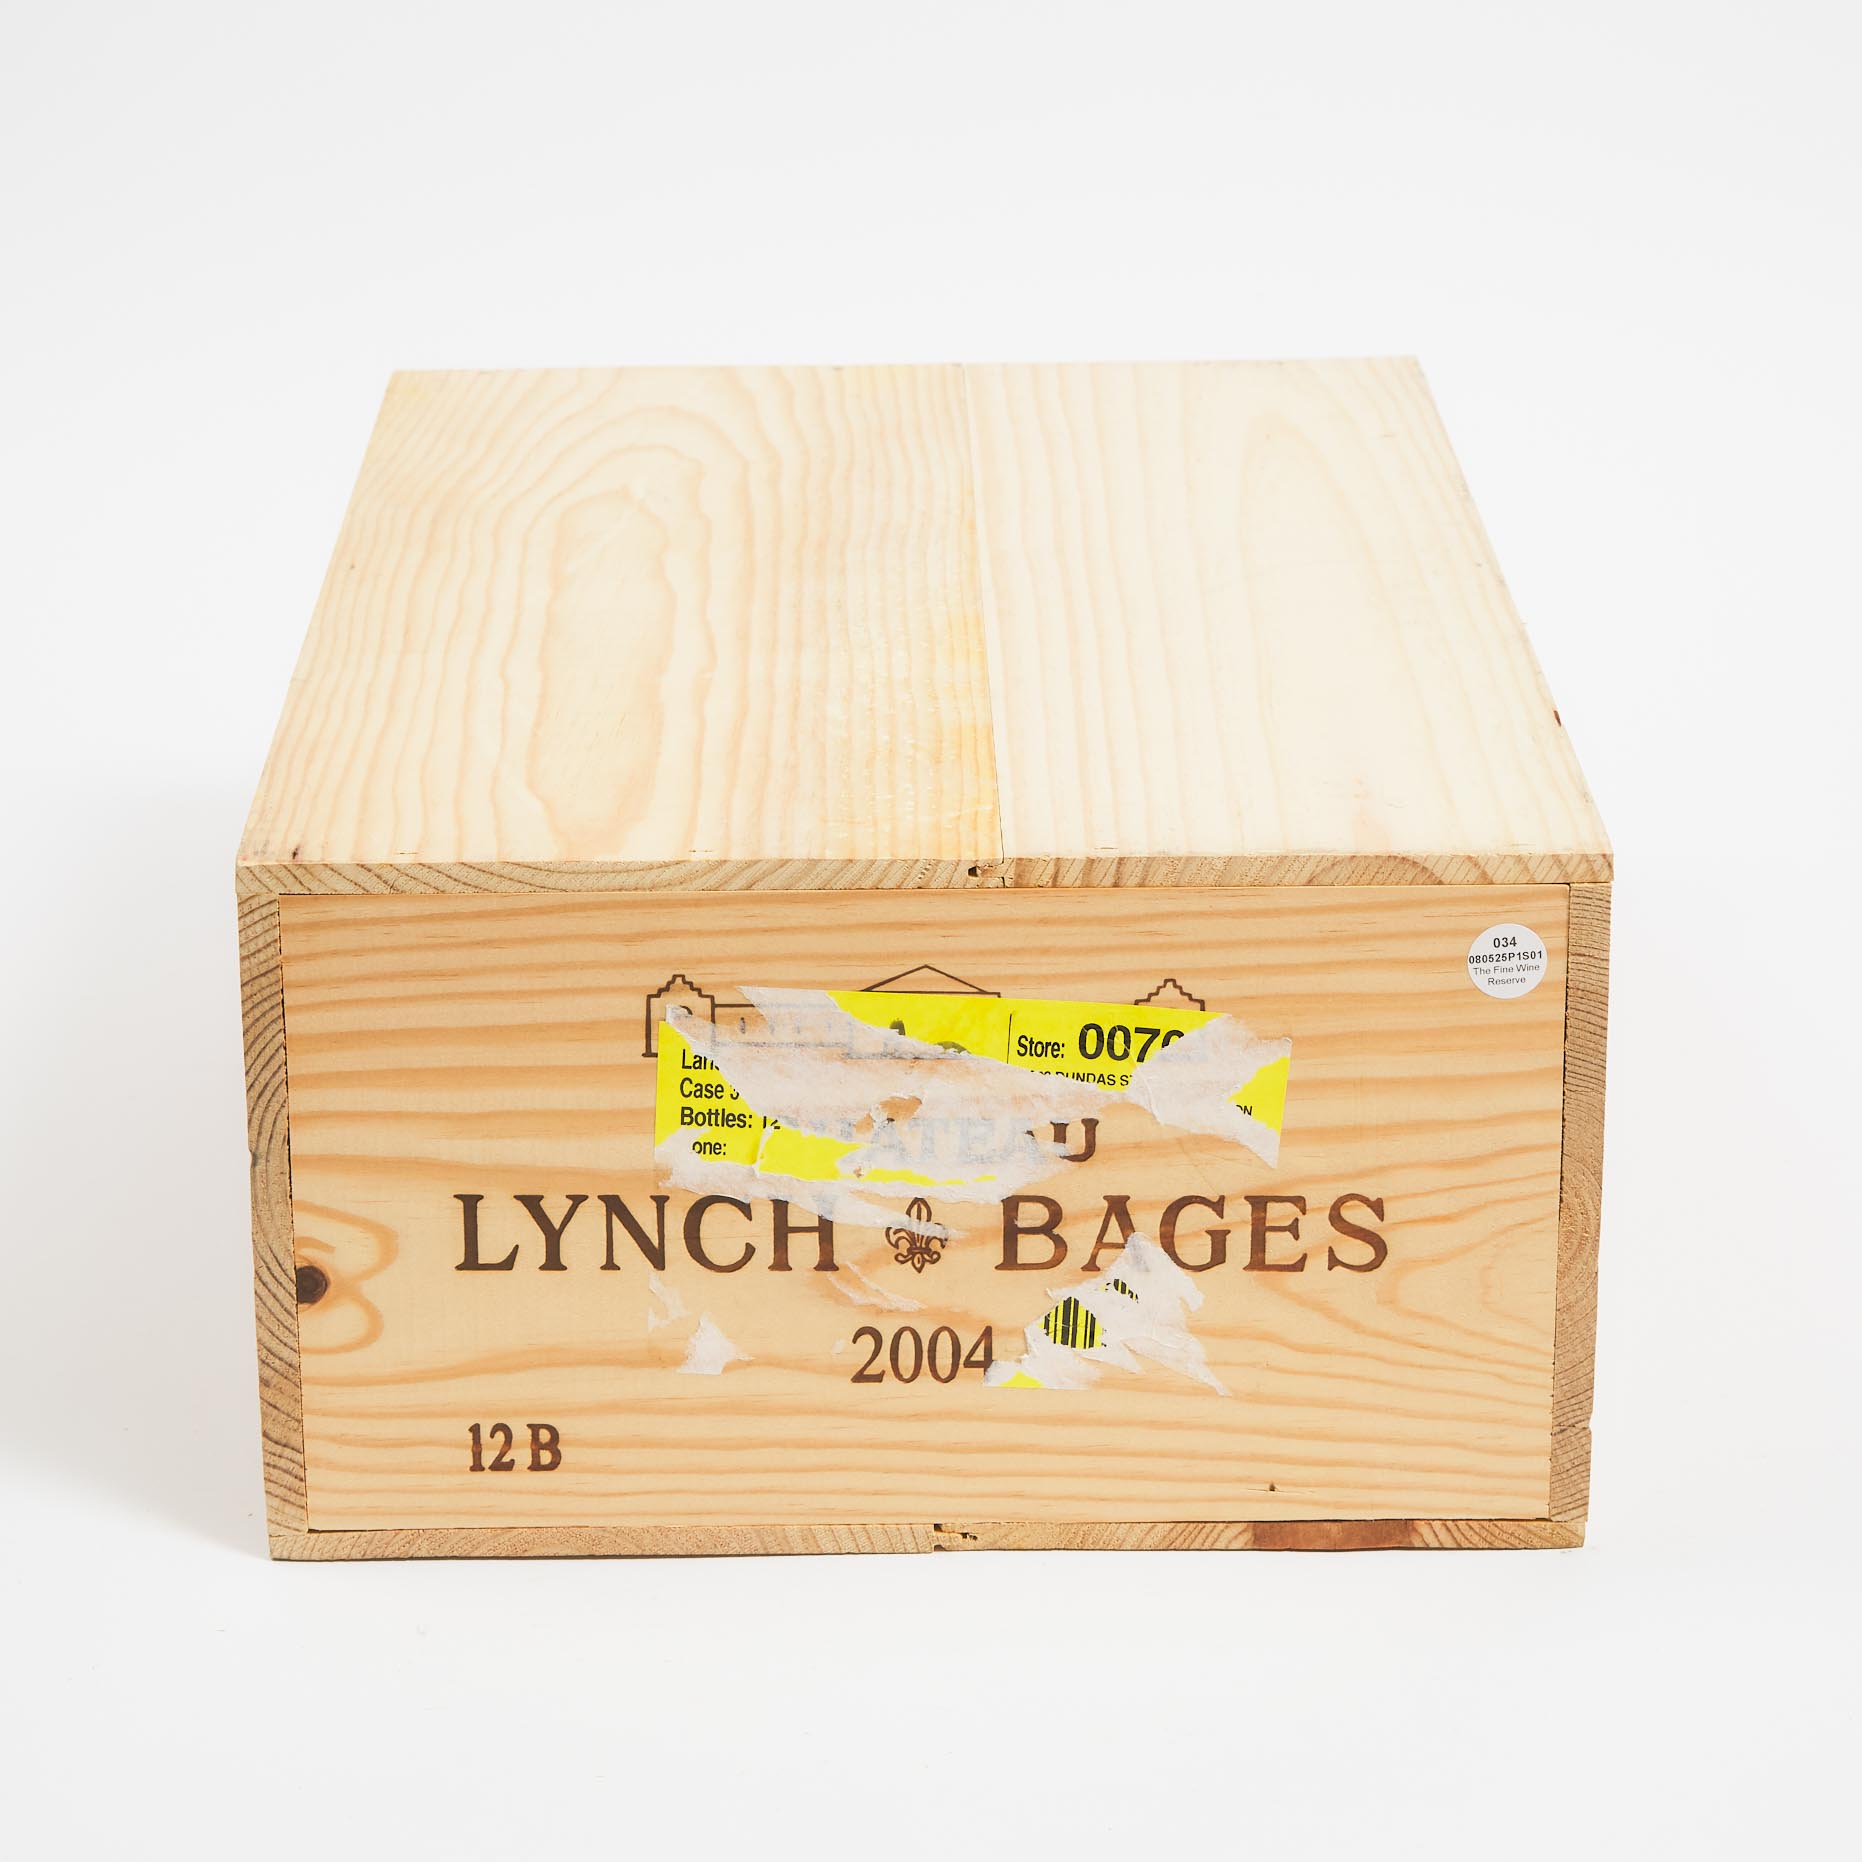 CHÂTEAU LYNCH-BAGES 2004 (12, OWC)